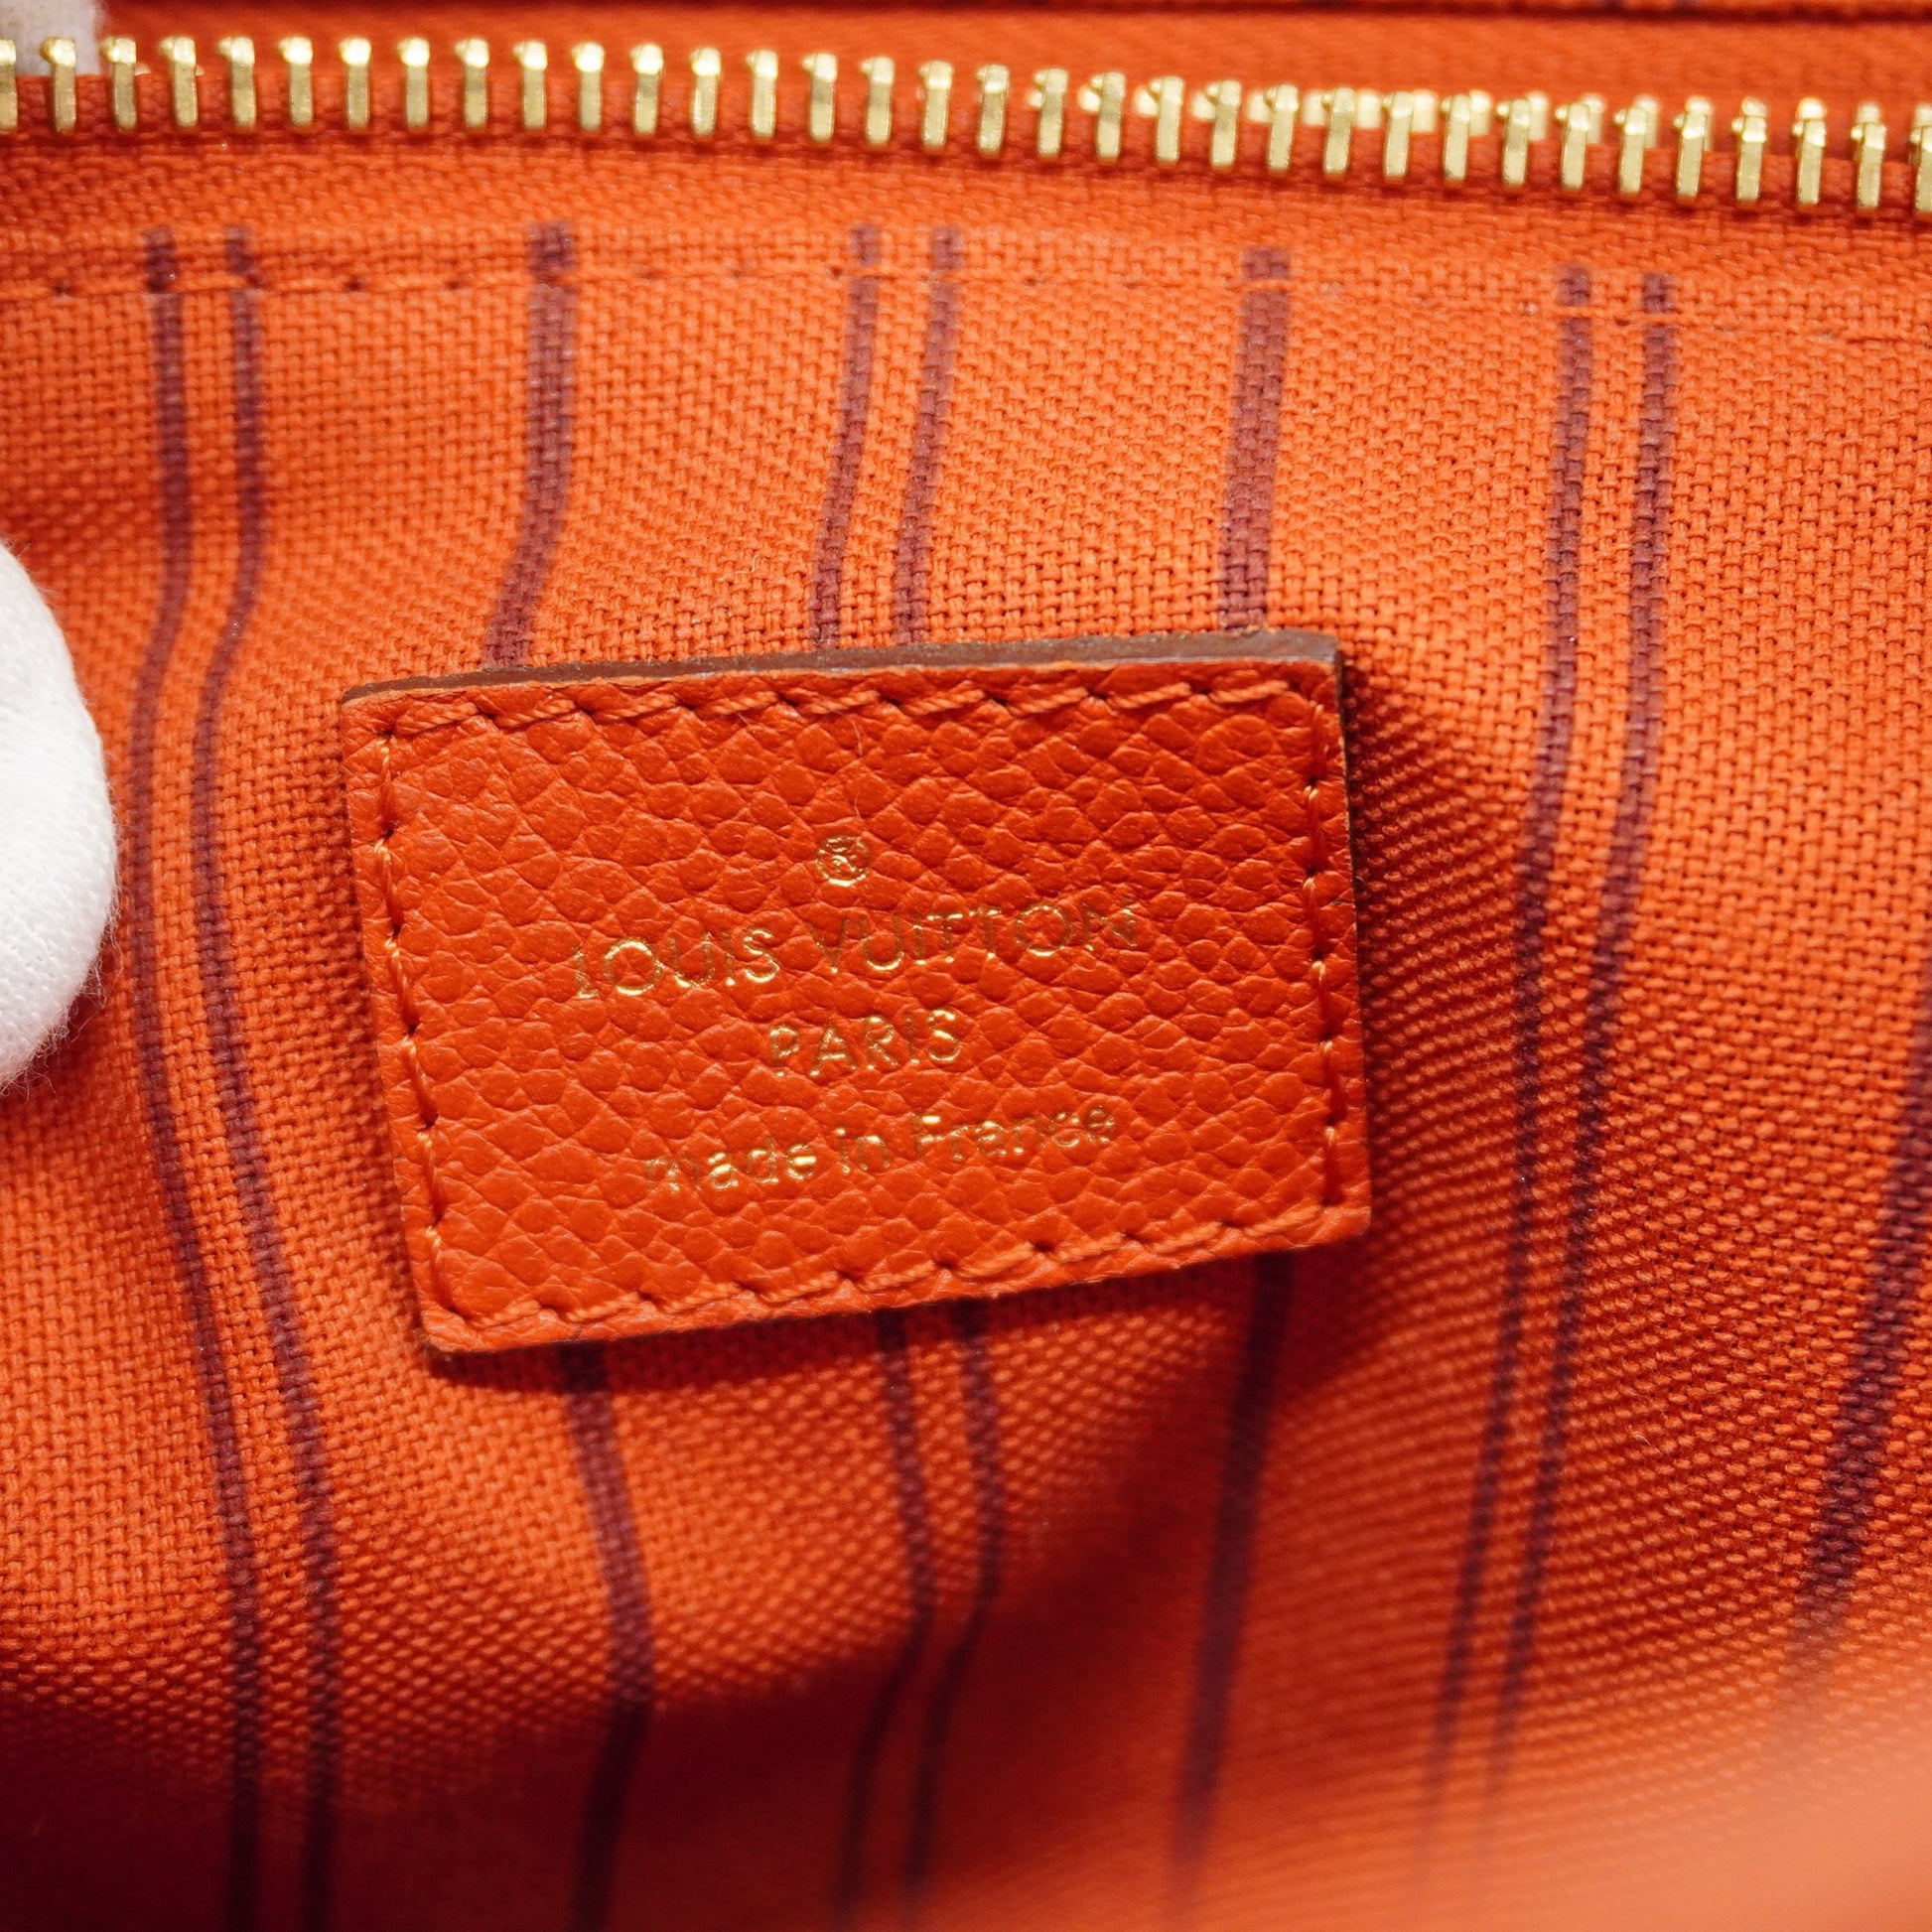 3ad3213] Auth Louis Vuitton Tote Bag Monogram Empreinte Citadines